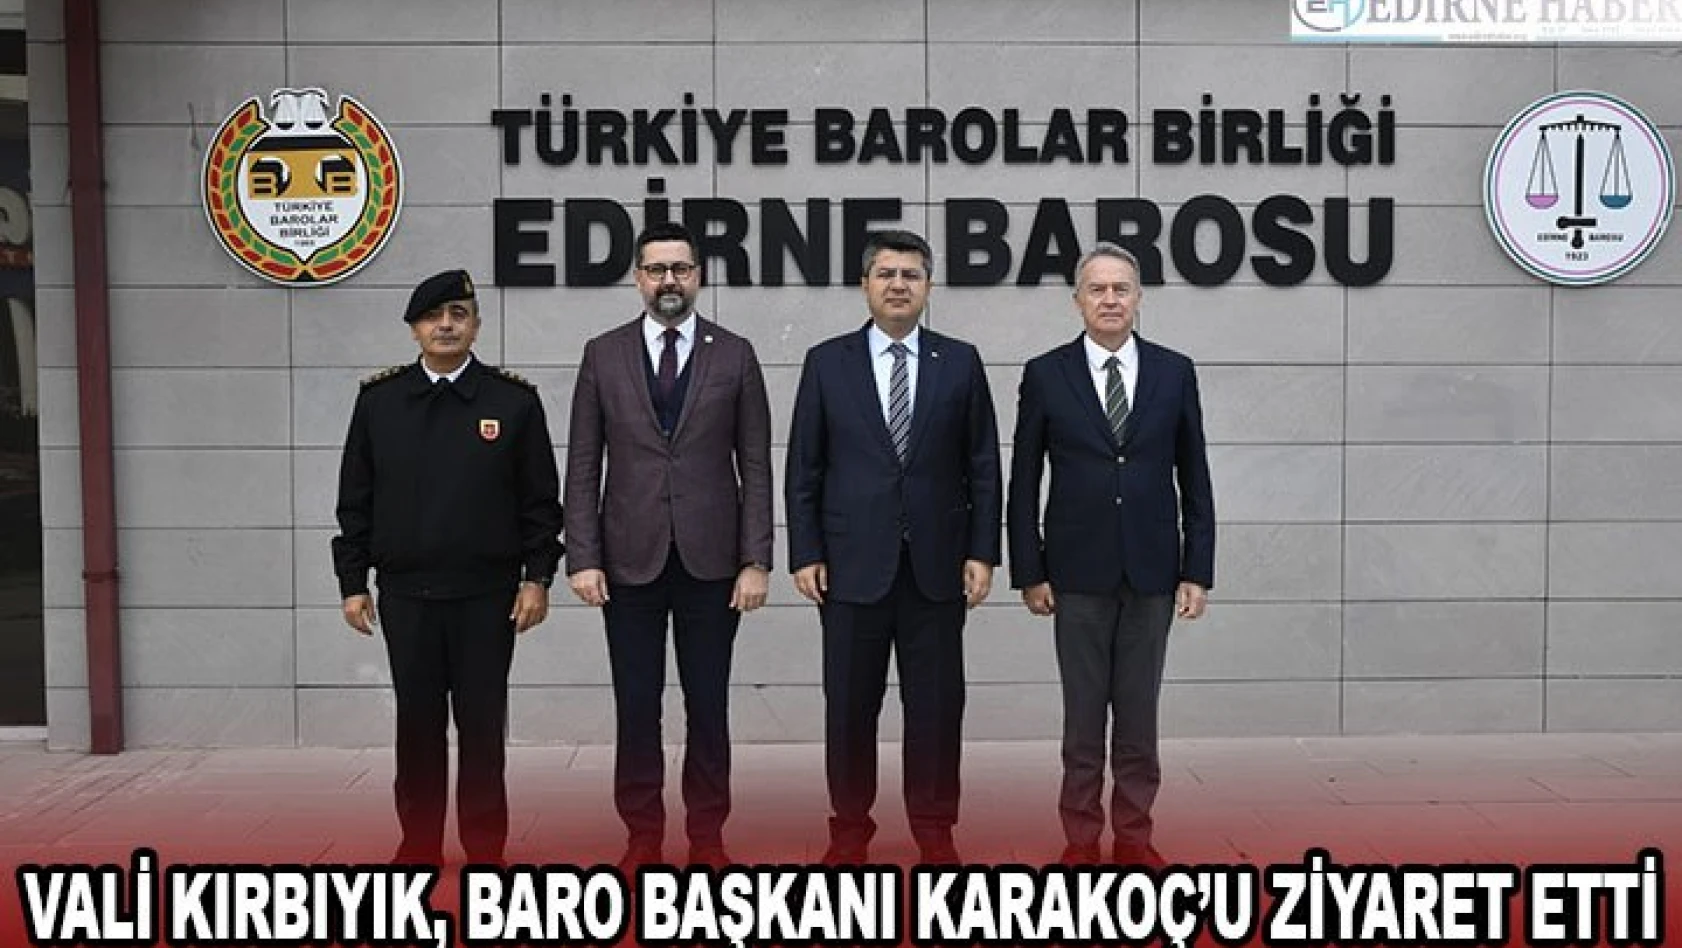 Vali Kırbıyık, Baro Başkanı Karakoç'u ziyaret etti